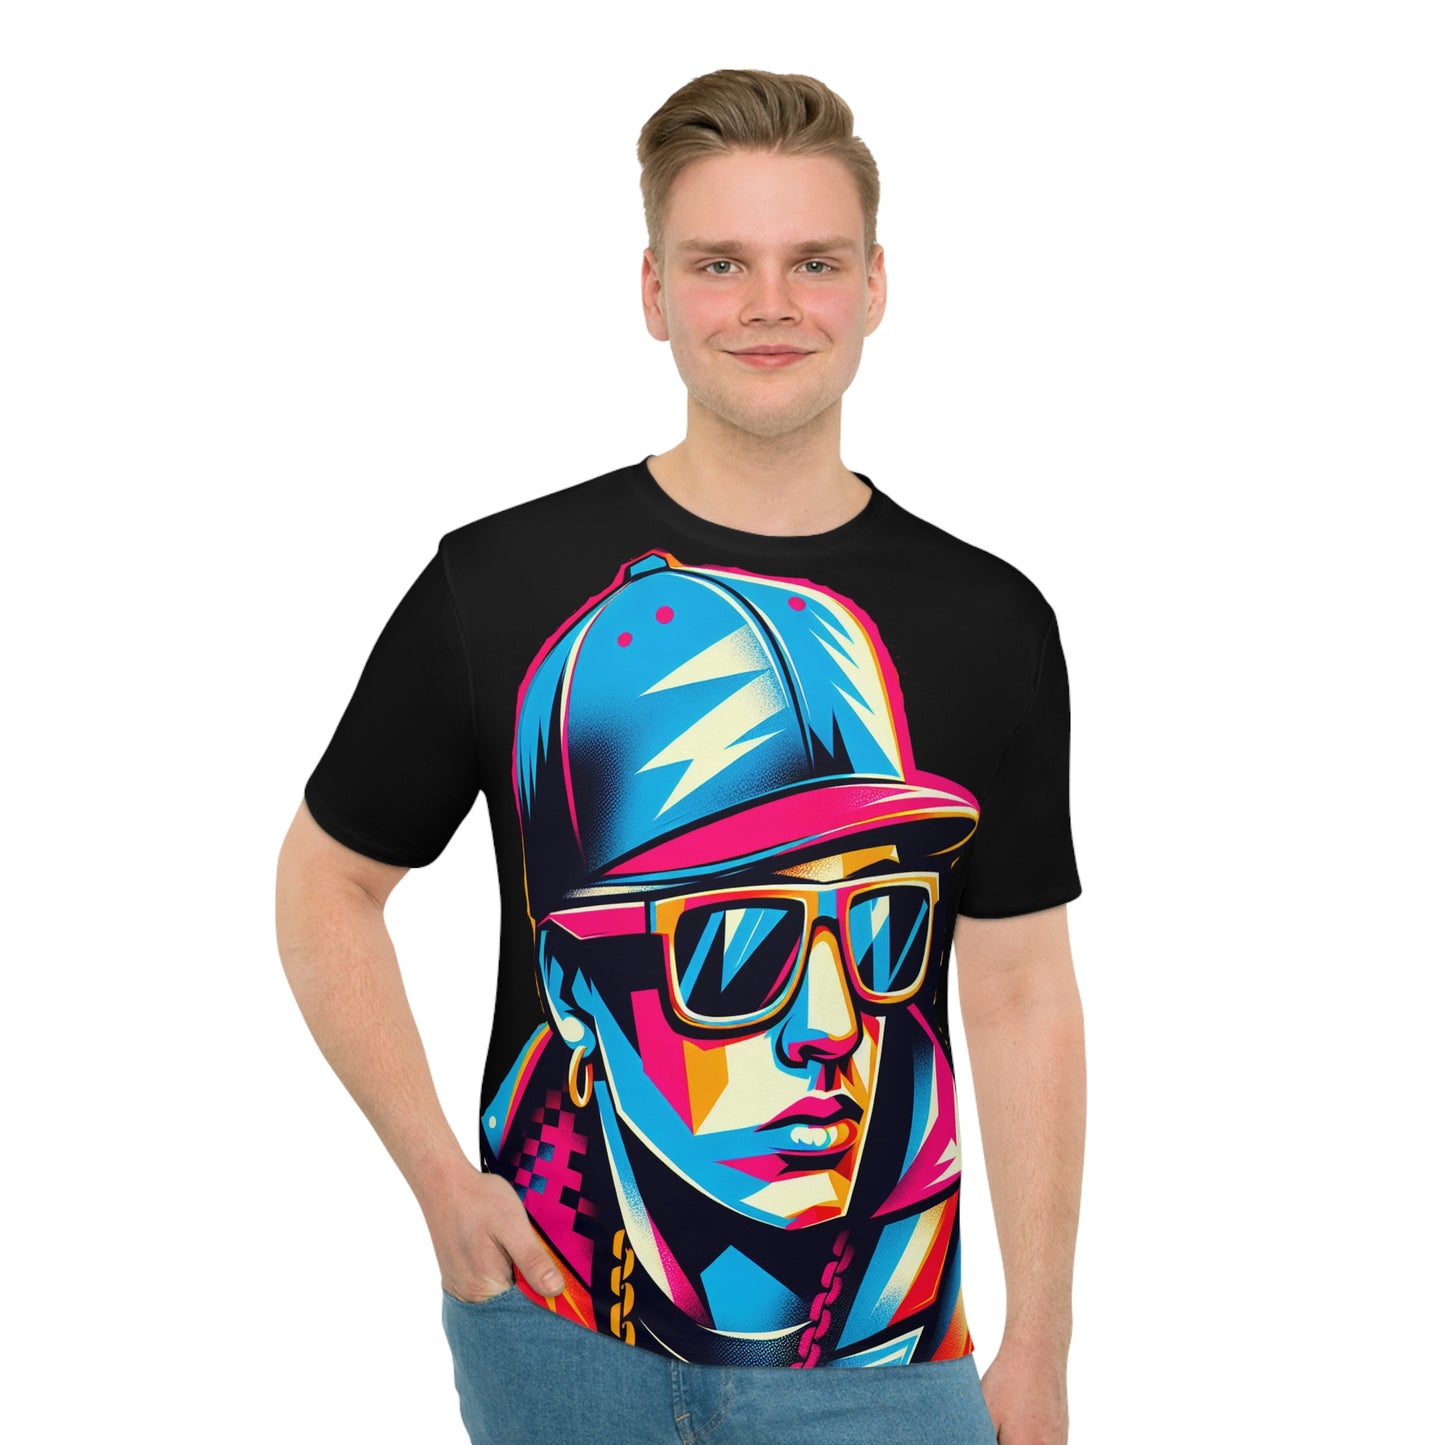 Neon Pop Art Men's T-shirt